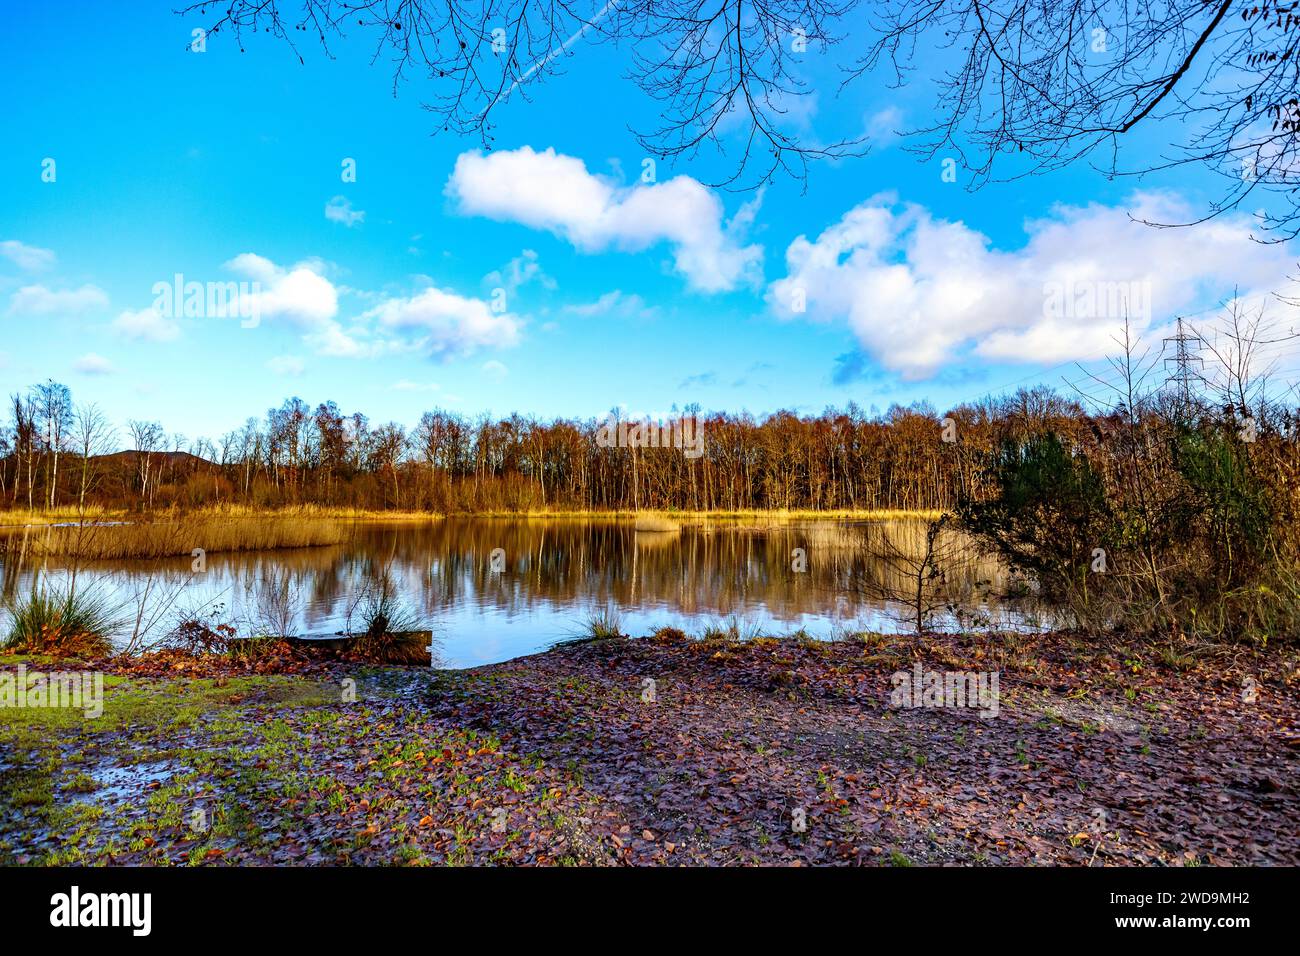 Paesaggio con lago con alberi nudi contro cielo blu con nuvole bianche sullo sfondo, riflessi specchi sulla superficie dell'acqua, Thor Park - Hoge Kempen nati Foto Stock